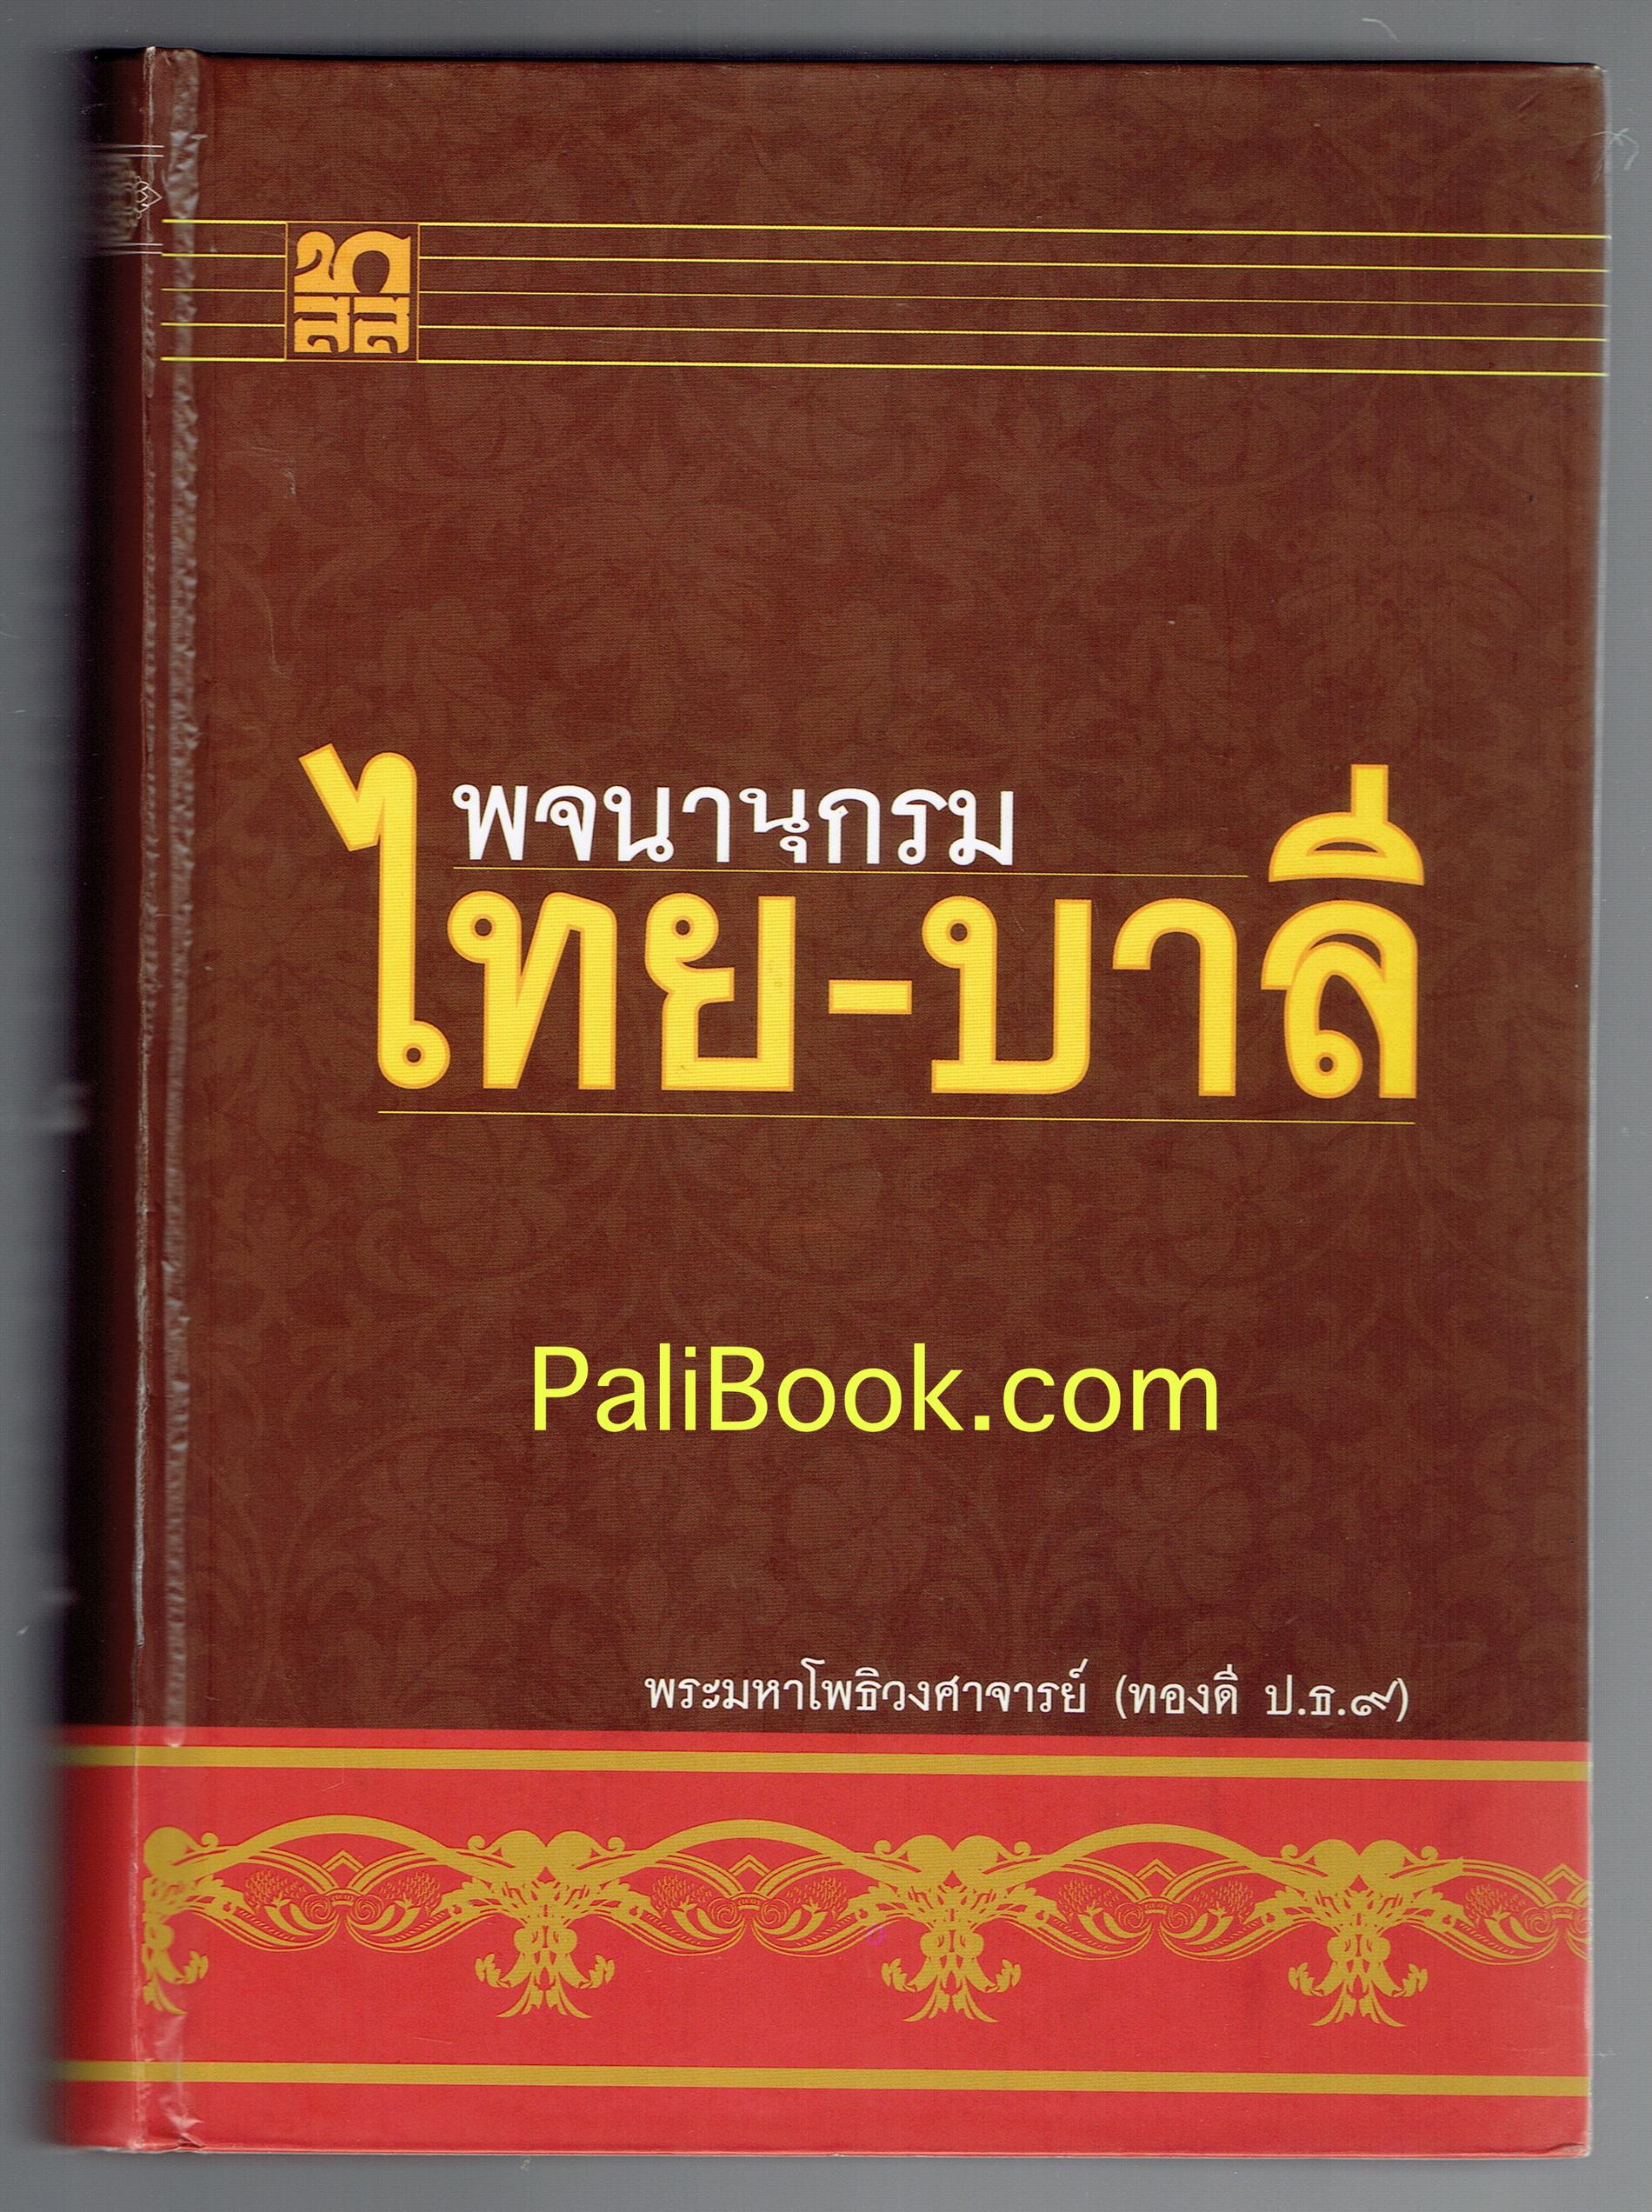 พจนานุกรม ไทย-บาลี - พระมหาโพธิวงศาจารย์ (ทองดี สุรเตโช ป.ธ.๙, ราชบัณฑิต) - หนังสือบาลี ร้านบาลีบุ๊ก Palibook